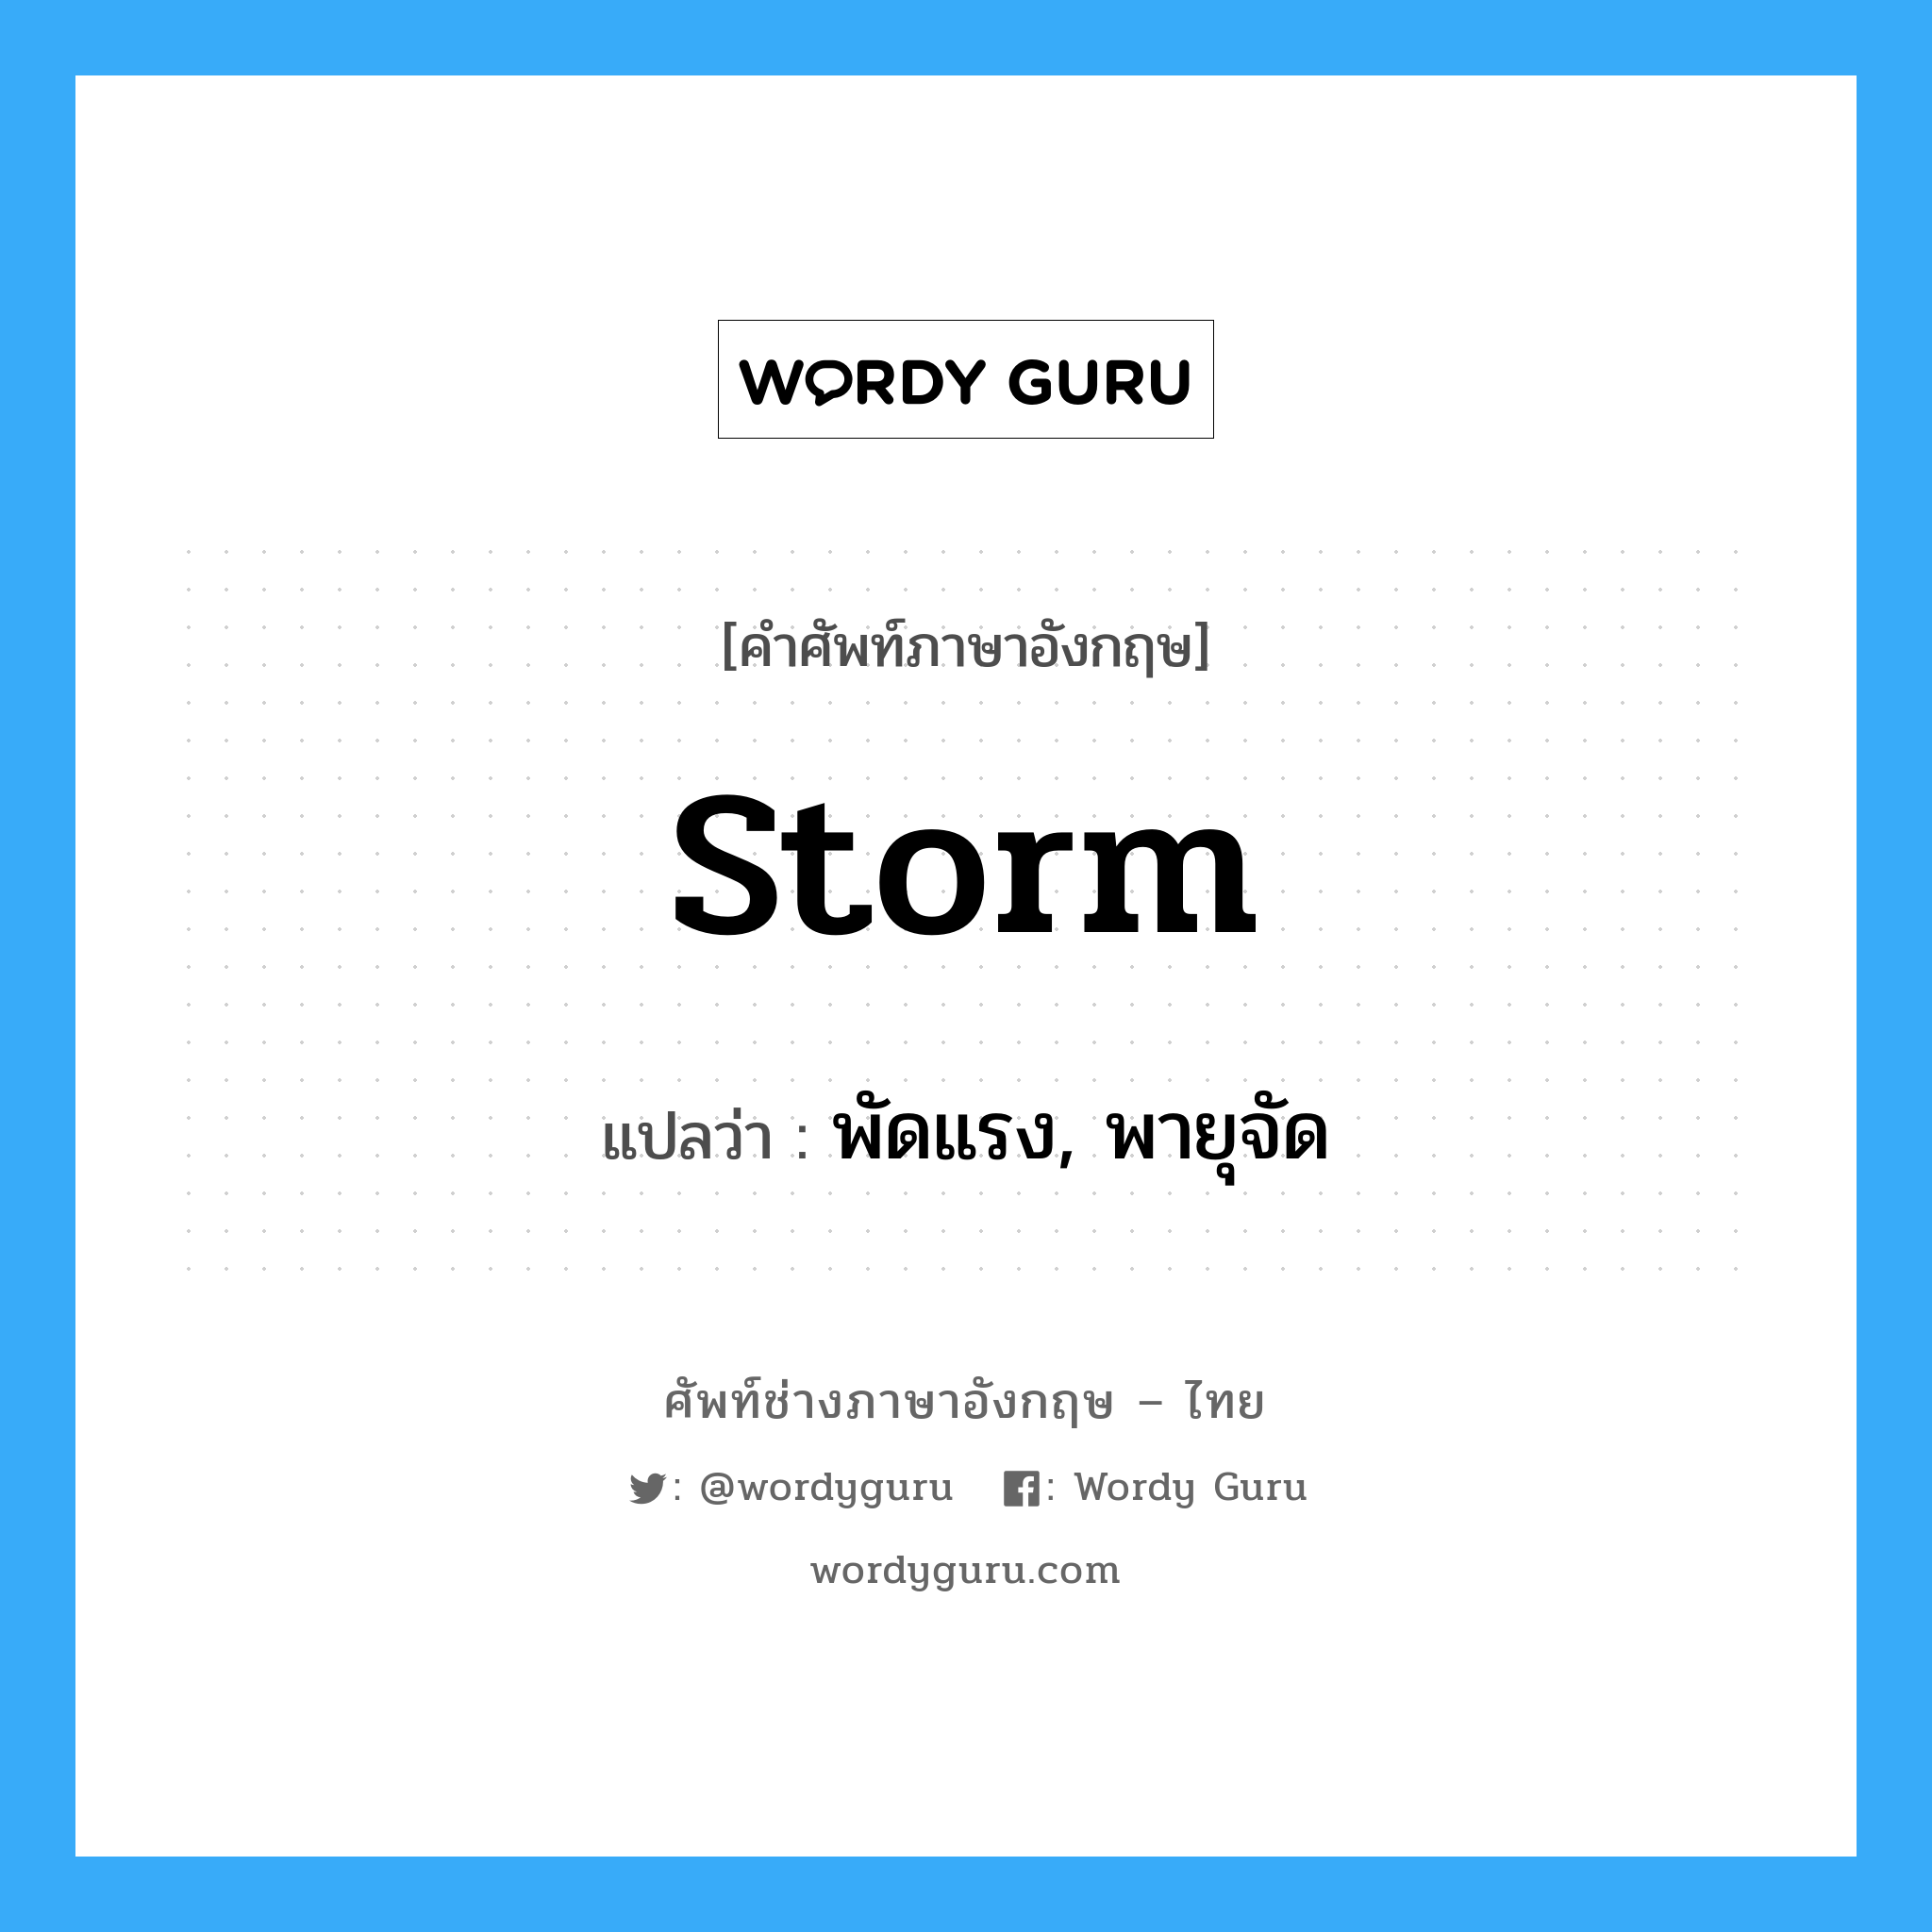 พัดแรง, พายุจัด ภาษาอังกฤษ?, คำศัพท์ช่างภาษาอังกฤษ - ไทย พัดแรง, พายุจัด คำศัพท์ภาษาอังกฤษ พัดแรง, พายุจัด แปลว่า storm